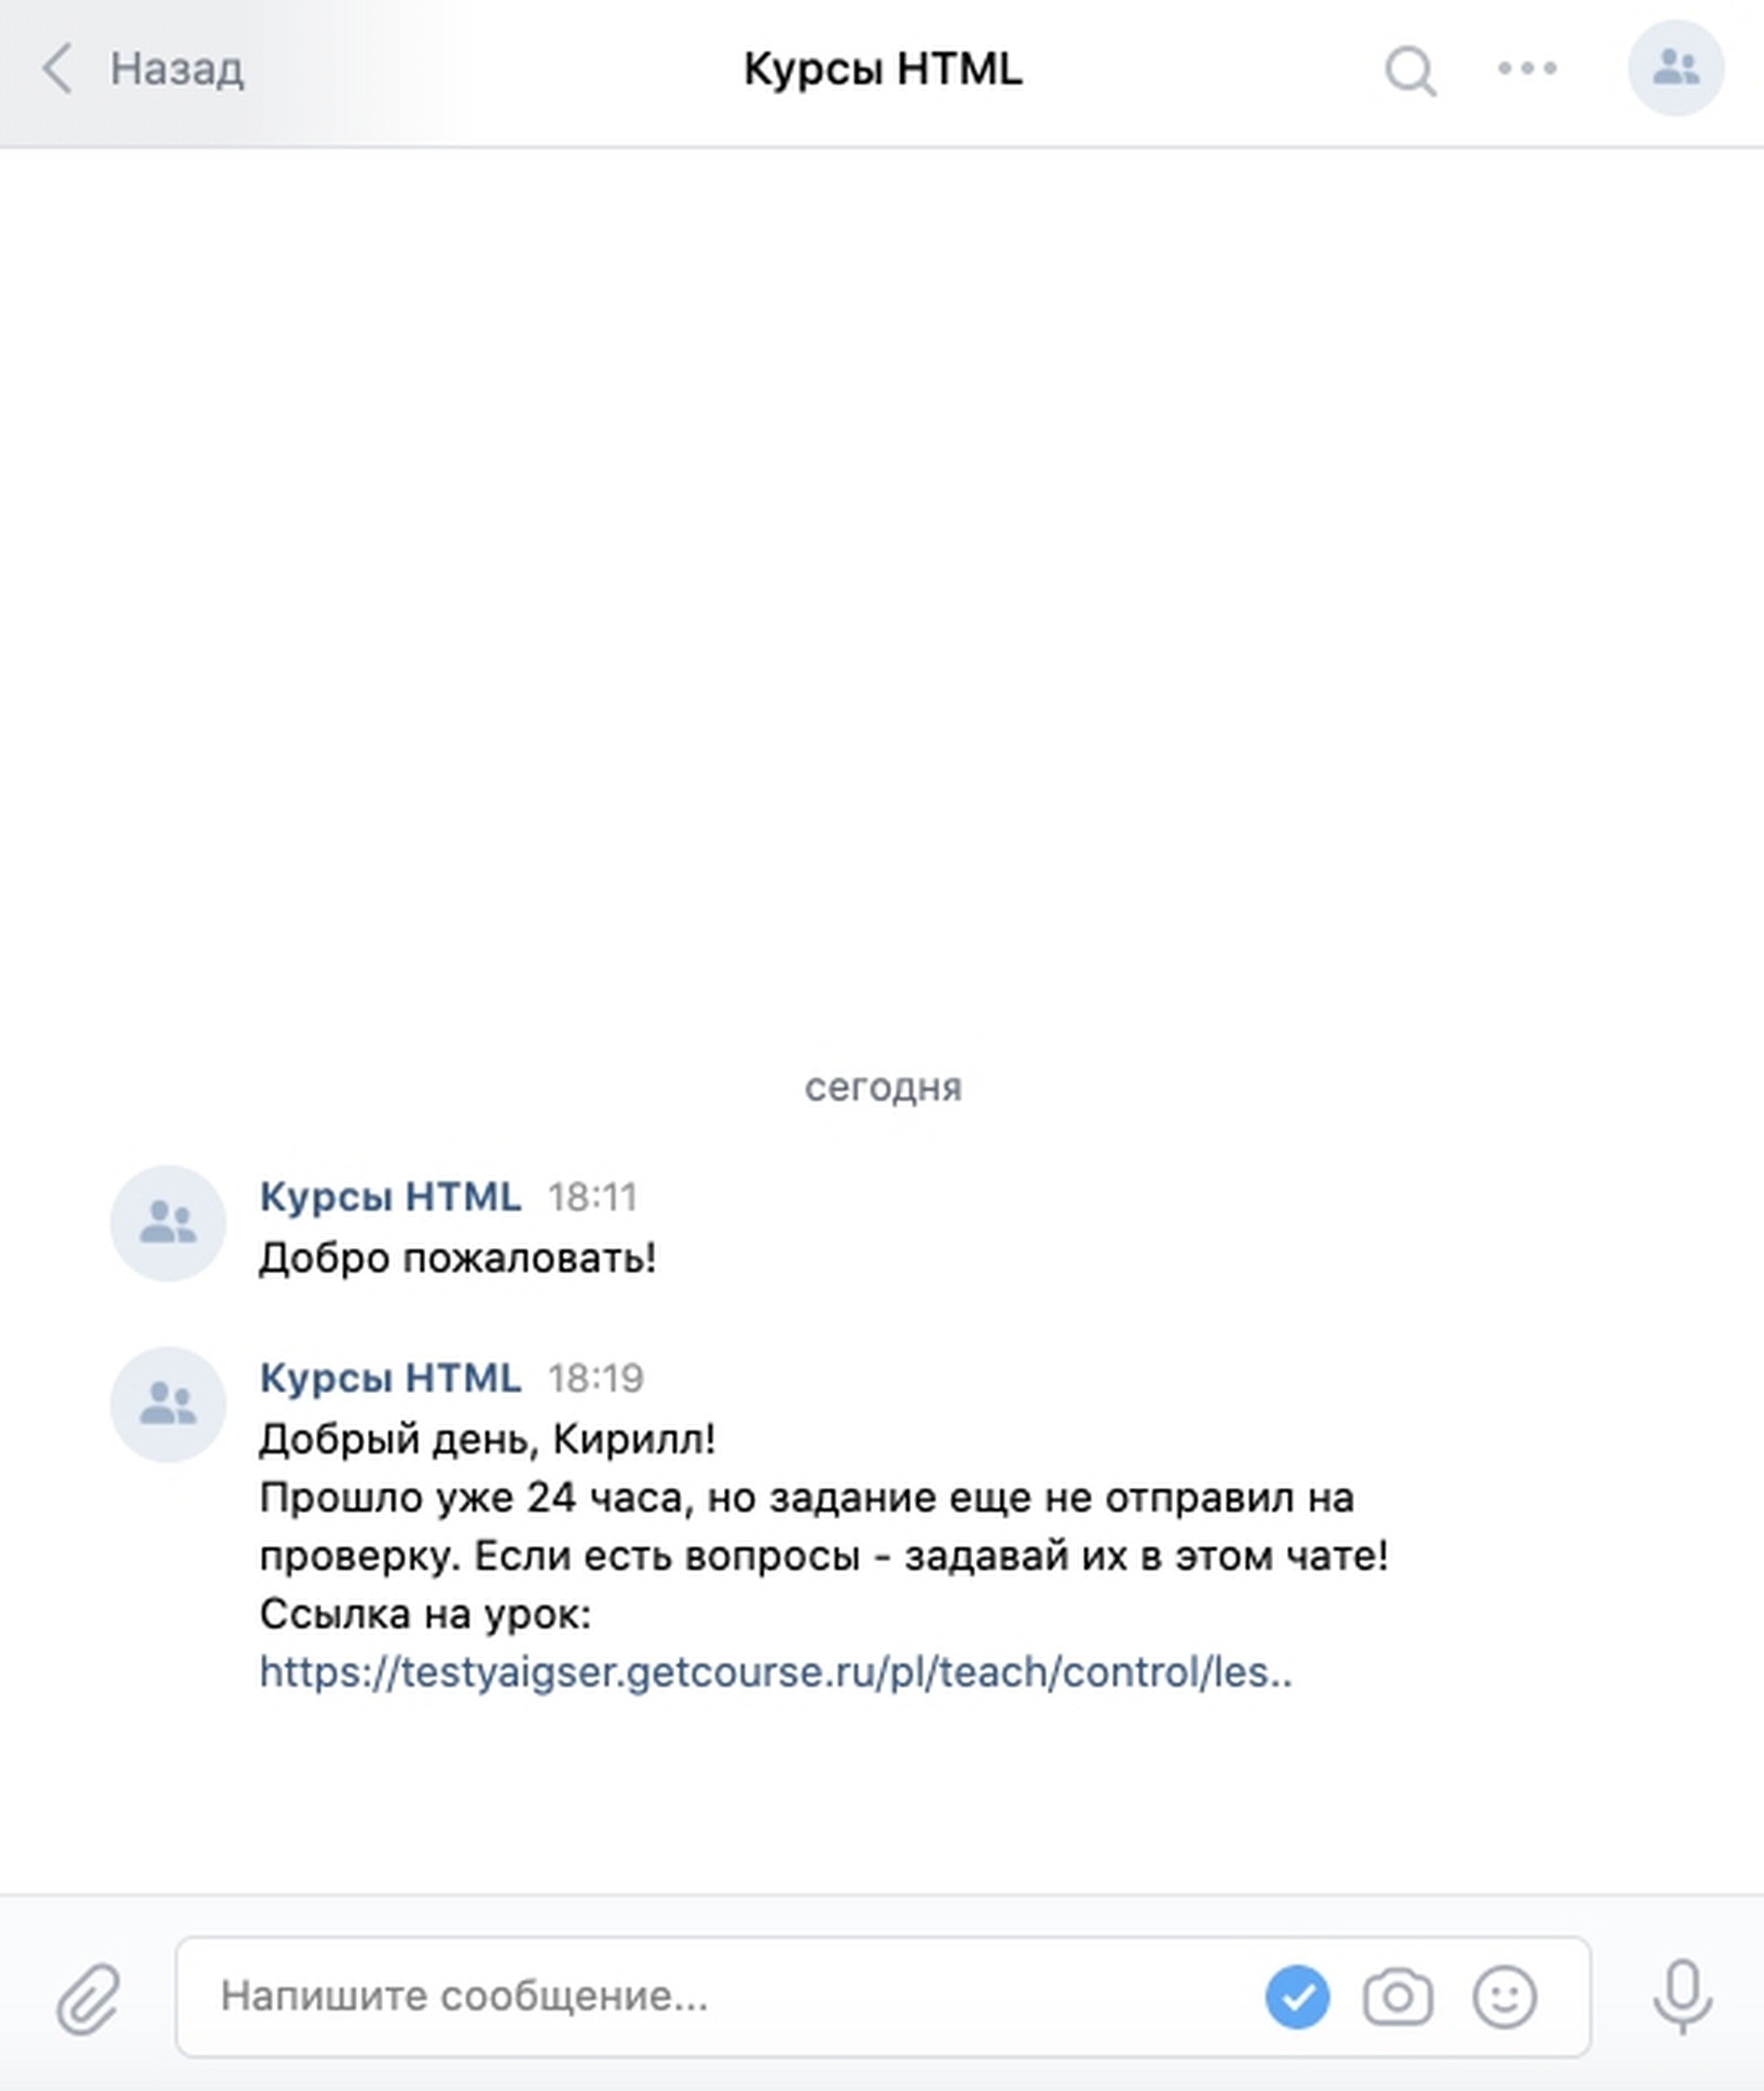 Пример оформления уведомления в мессенджер ВКонтакте